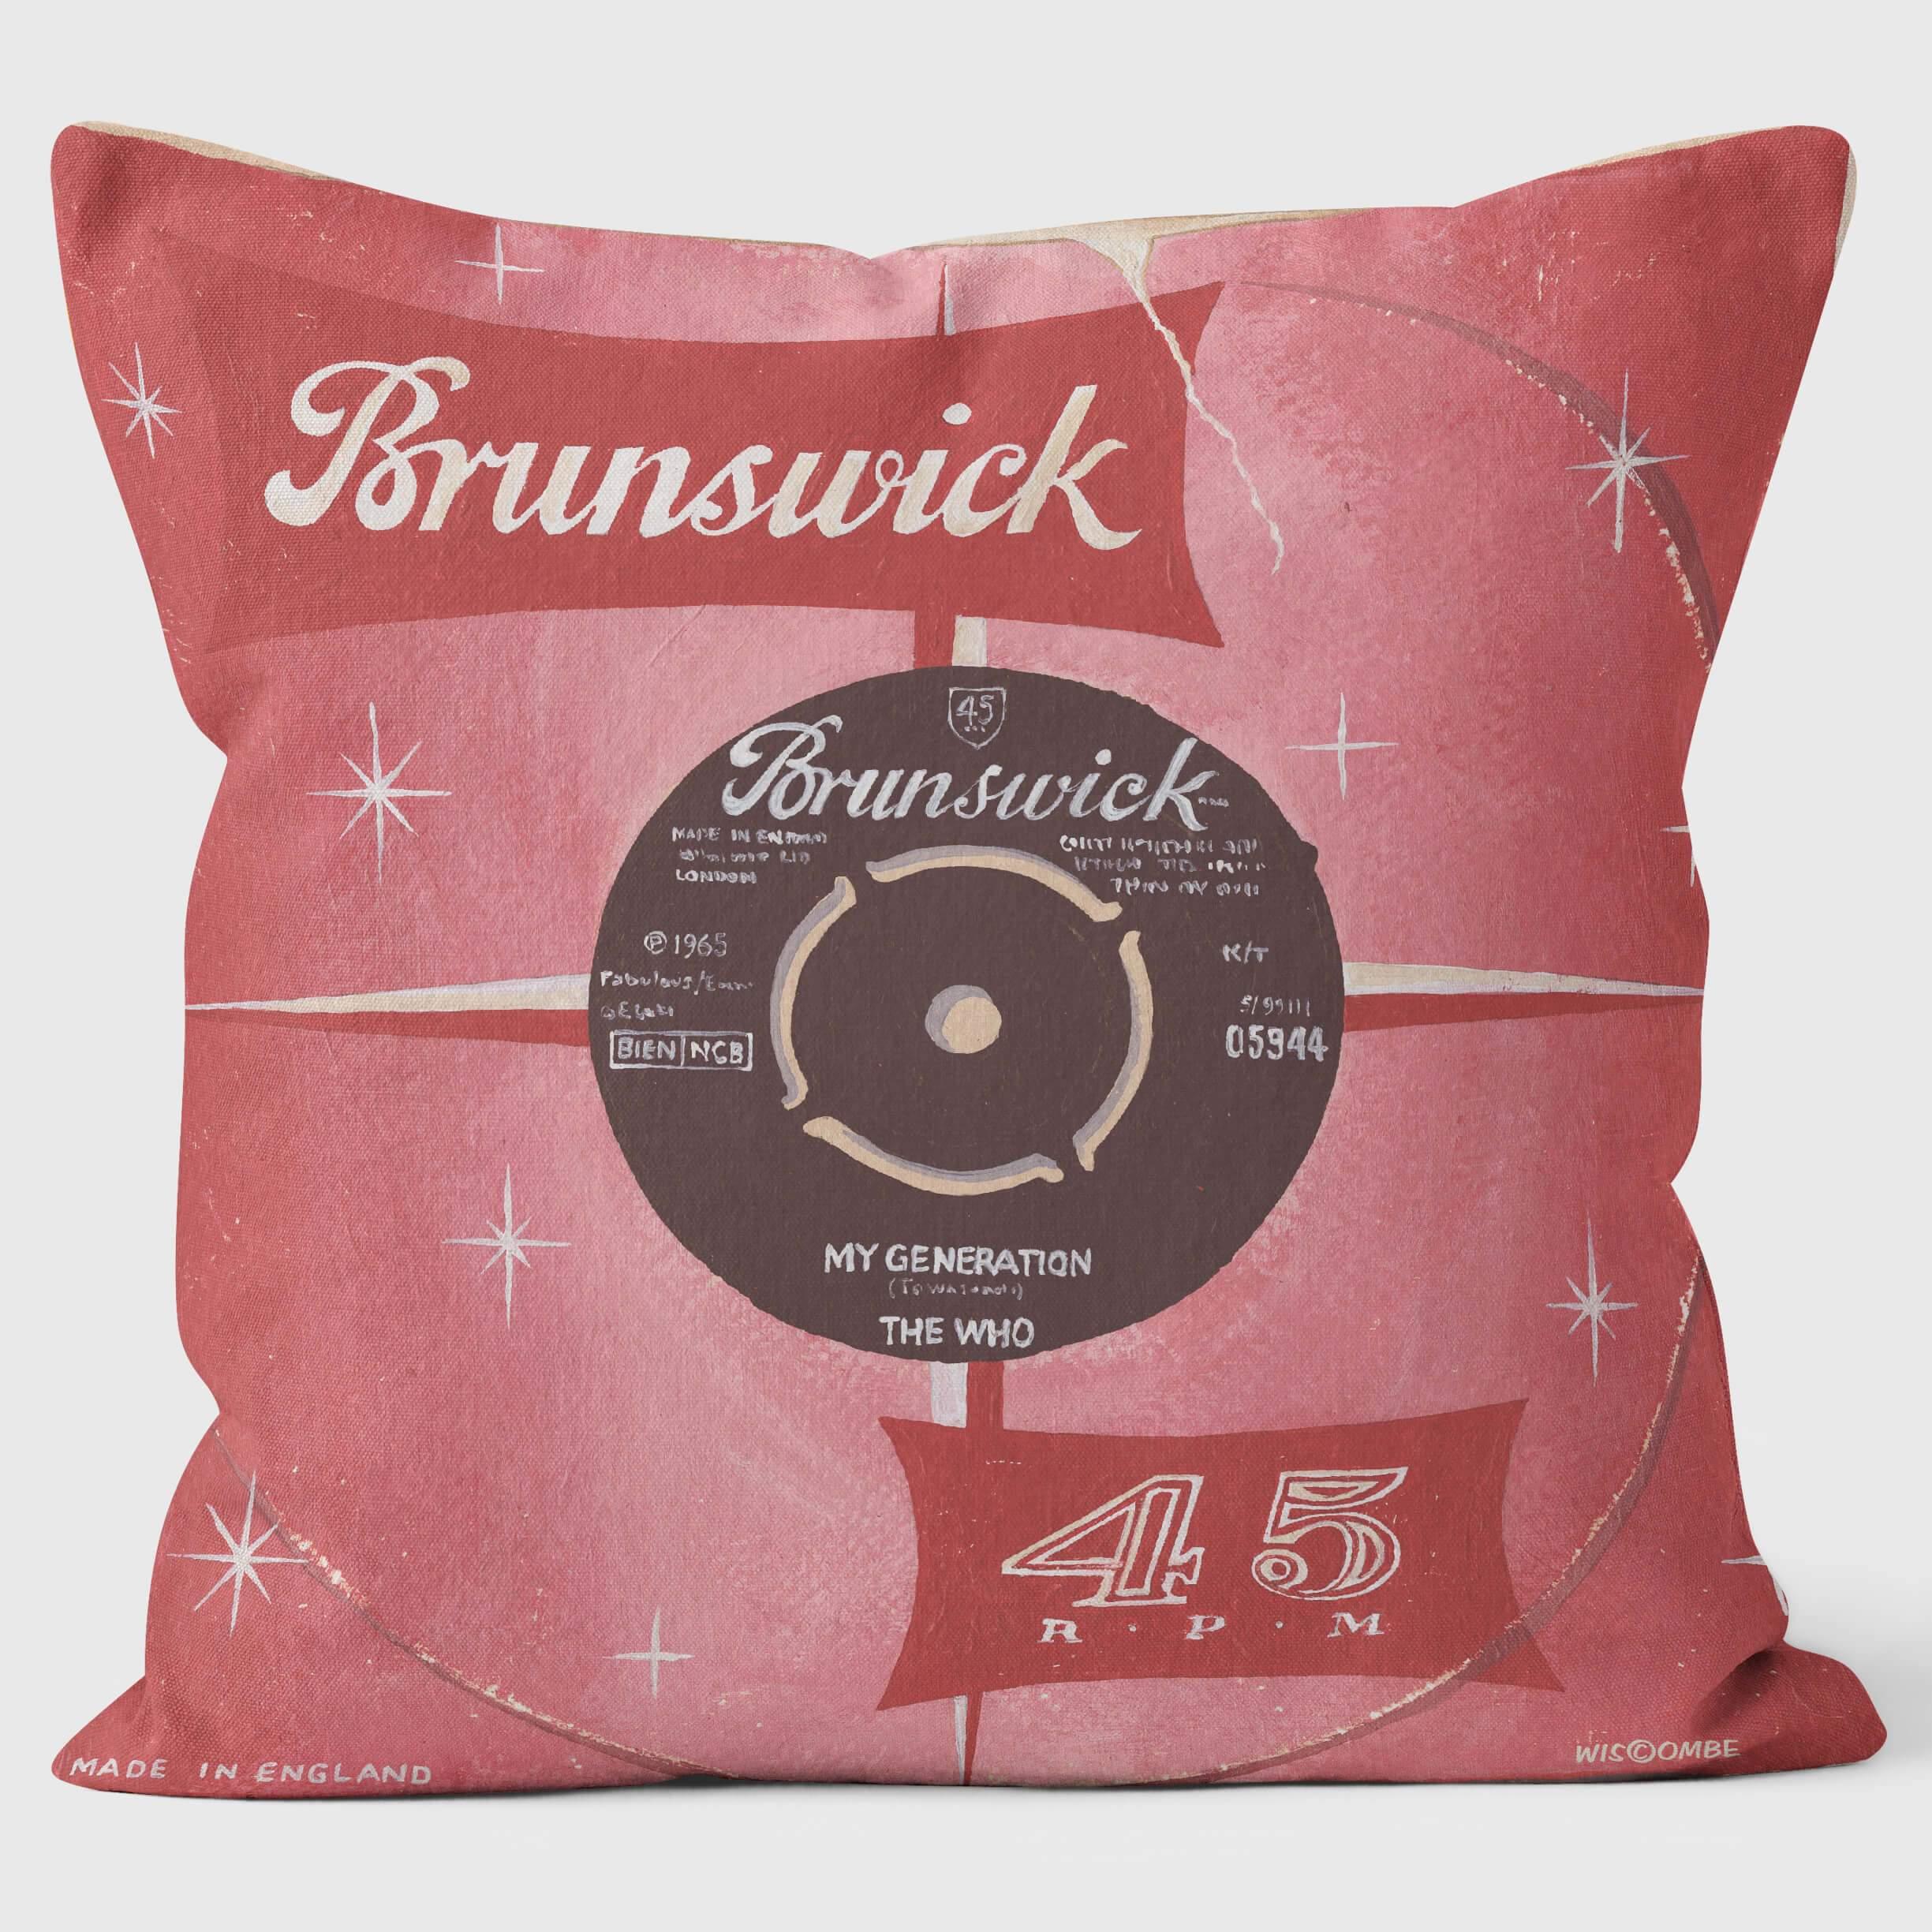 My Generation Brunswick - Martin Wiscombe - Classic Singles Cushion - Handmade Cushions UK - WeLoveCushions